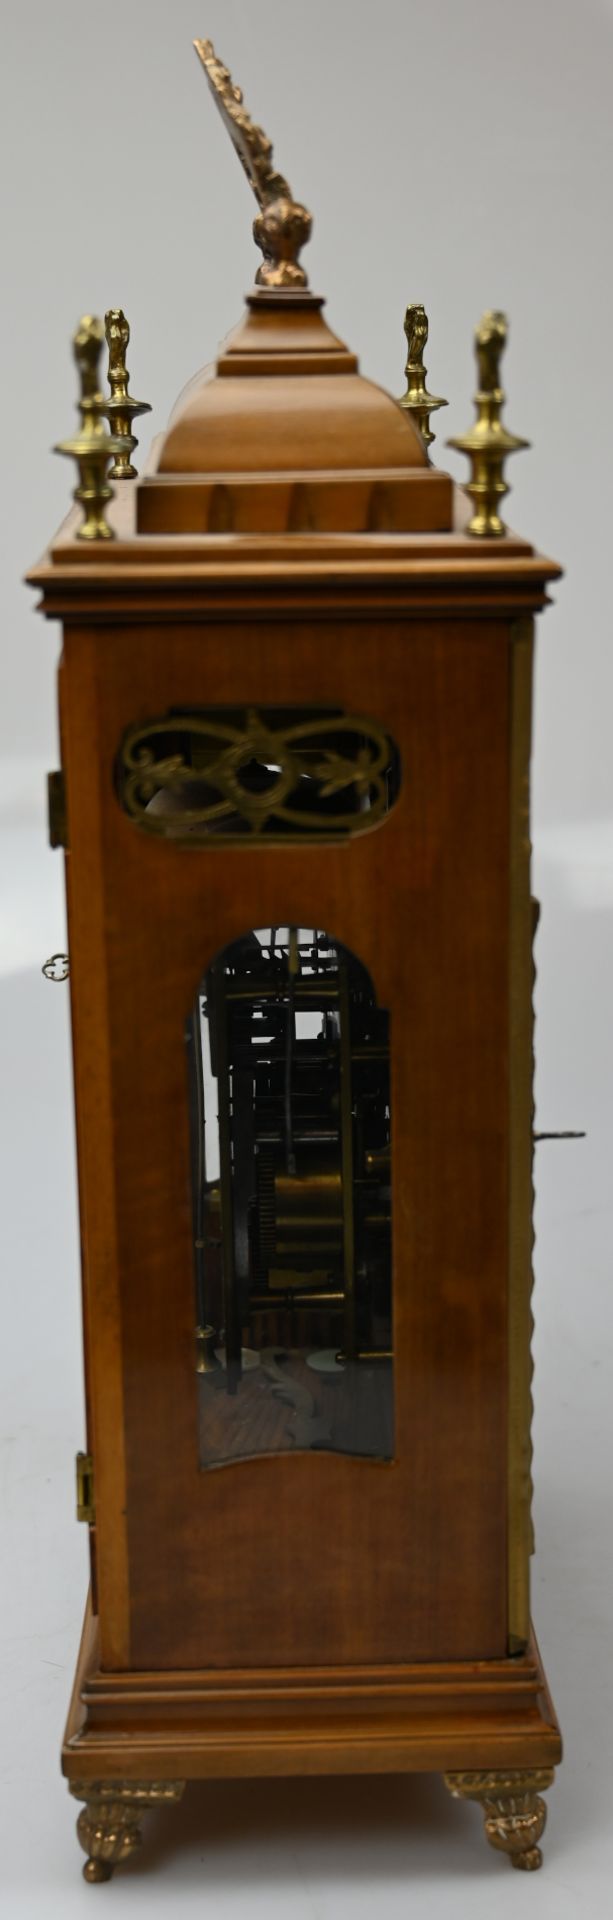 1 Stockuhr wohl um 1800, braunes Holzgehäuse z.T. bemalt/mit Messingapplikationen/-griff - Bild 3 aus 4